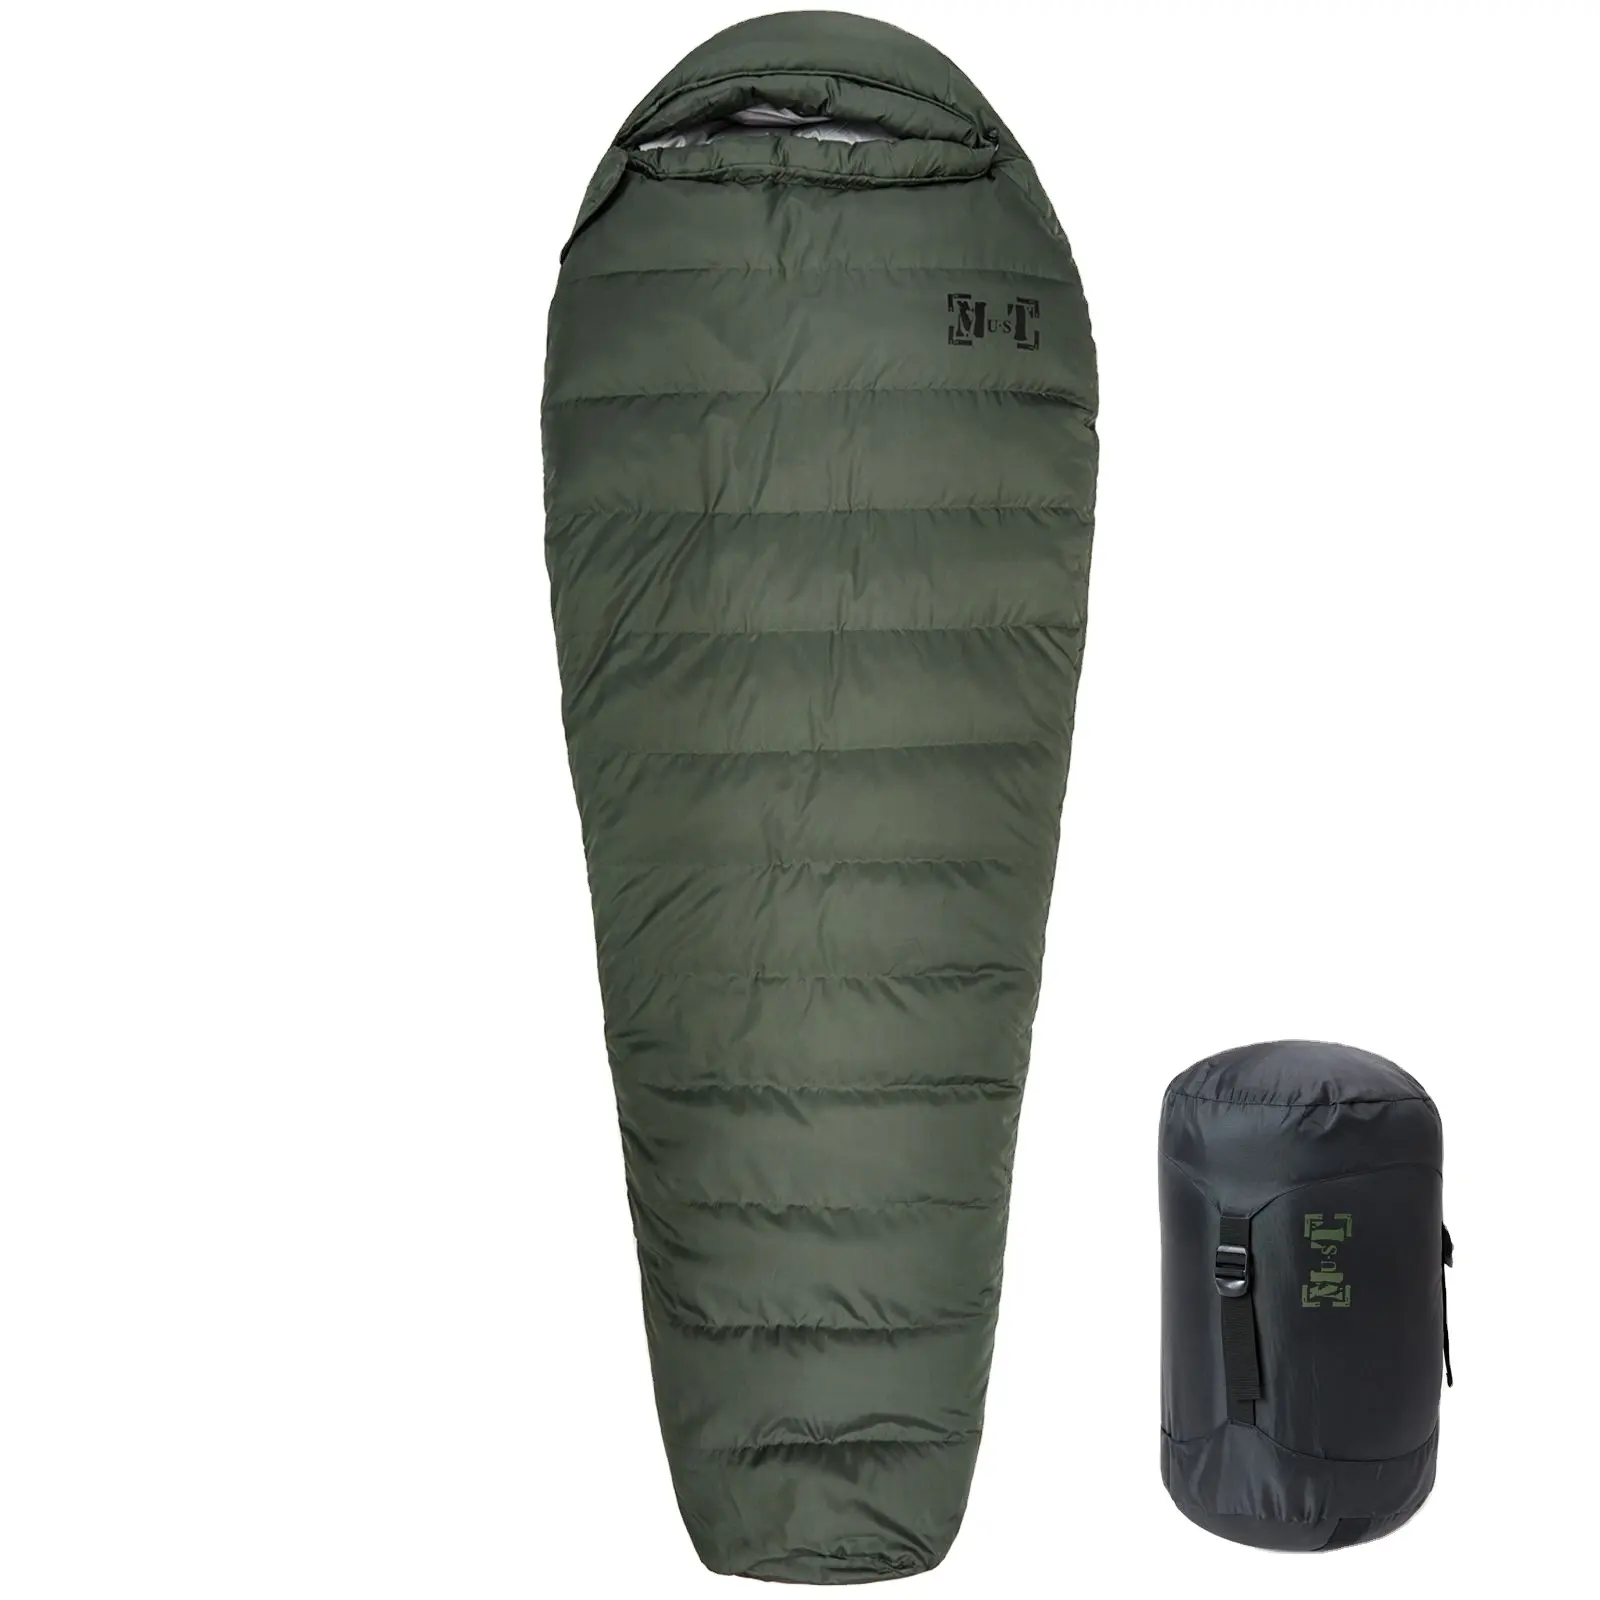 AKmax Ranger Down Mummy Anti-Extrem sacco a pelo freddo portatile campeggio escursionismo sacco a pelo verde oliva